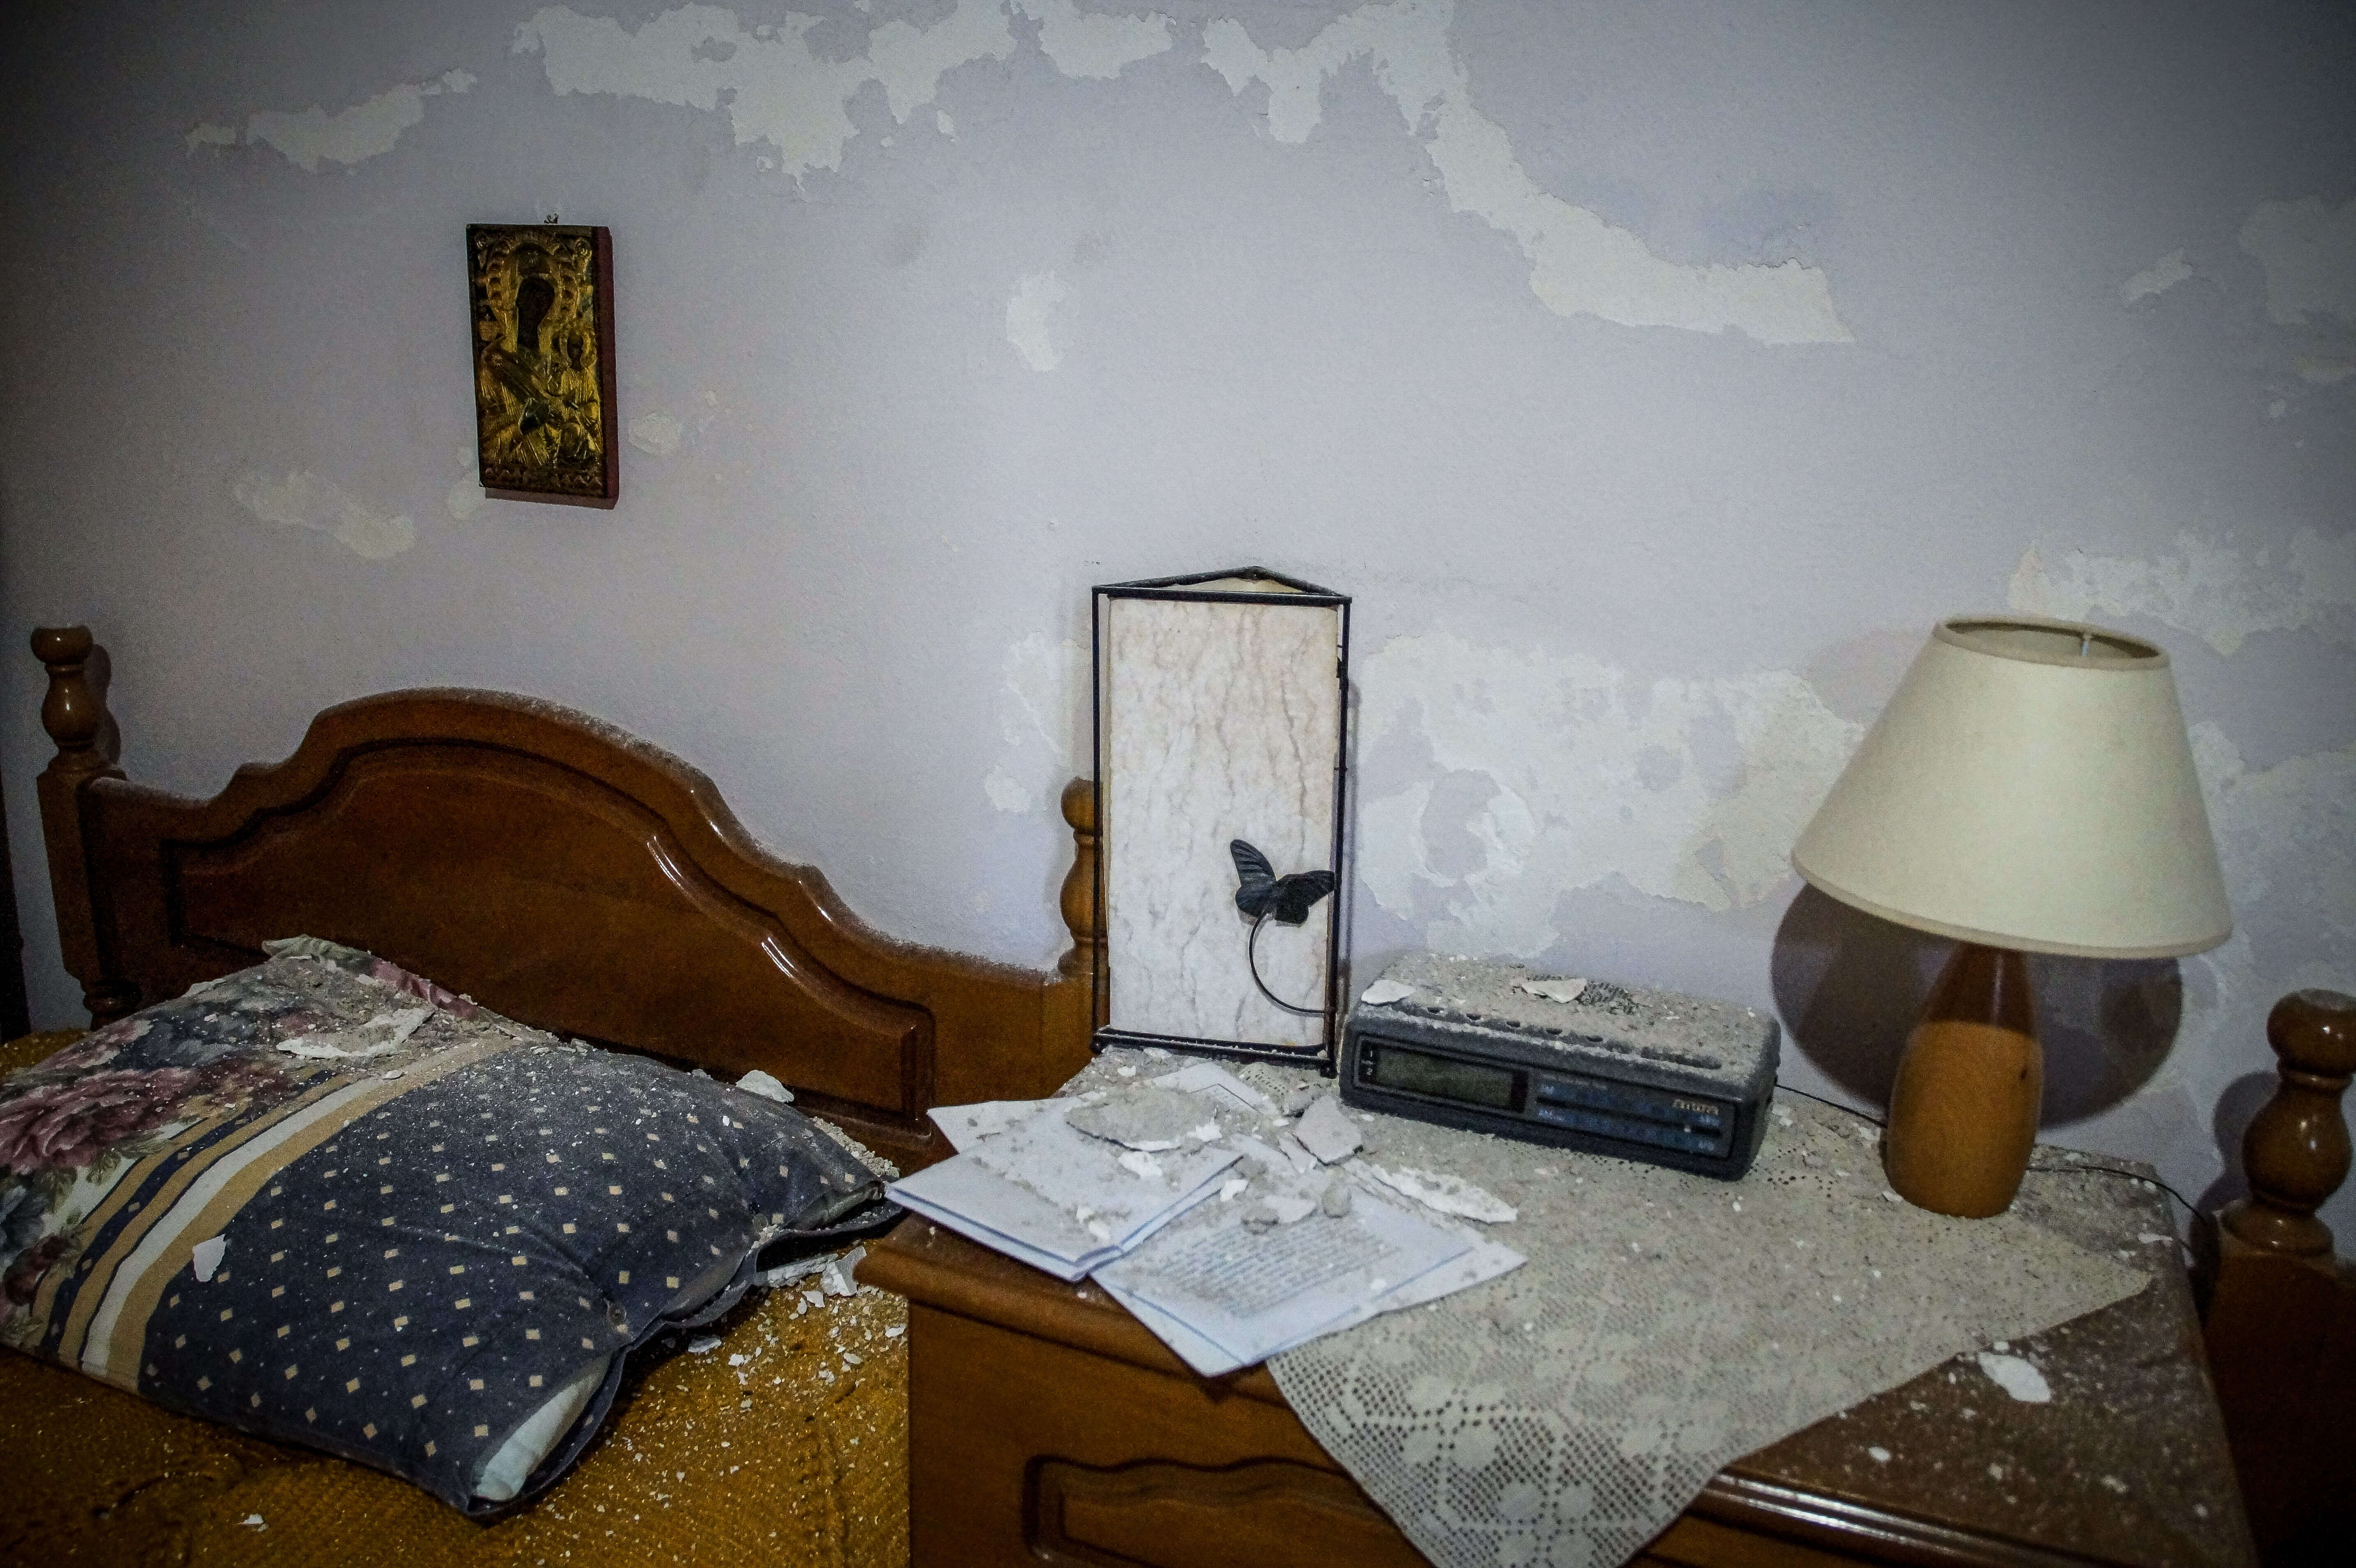 Σεισμός στην Πρέβεζα: Ρωγμές σε σπίτια και σχολεία – Οι πρώτες εικόνες μετά τα 5,2 Ρίχτερ [pics]